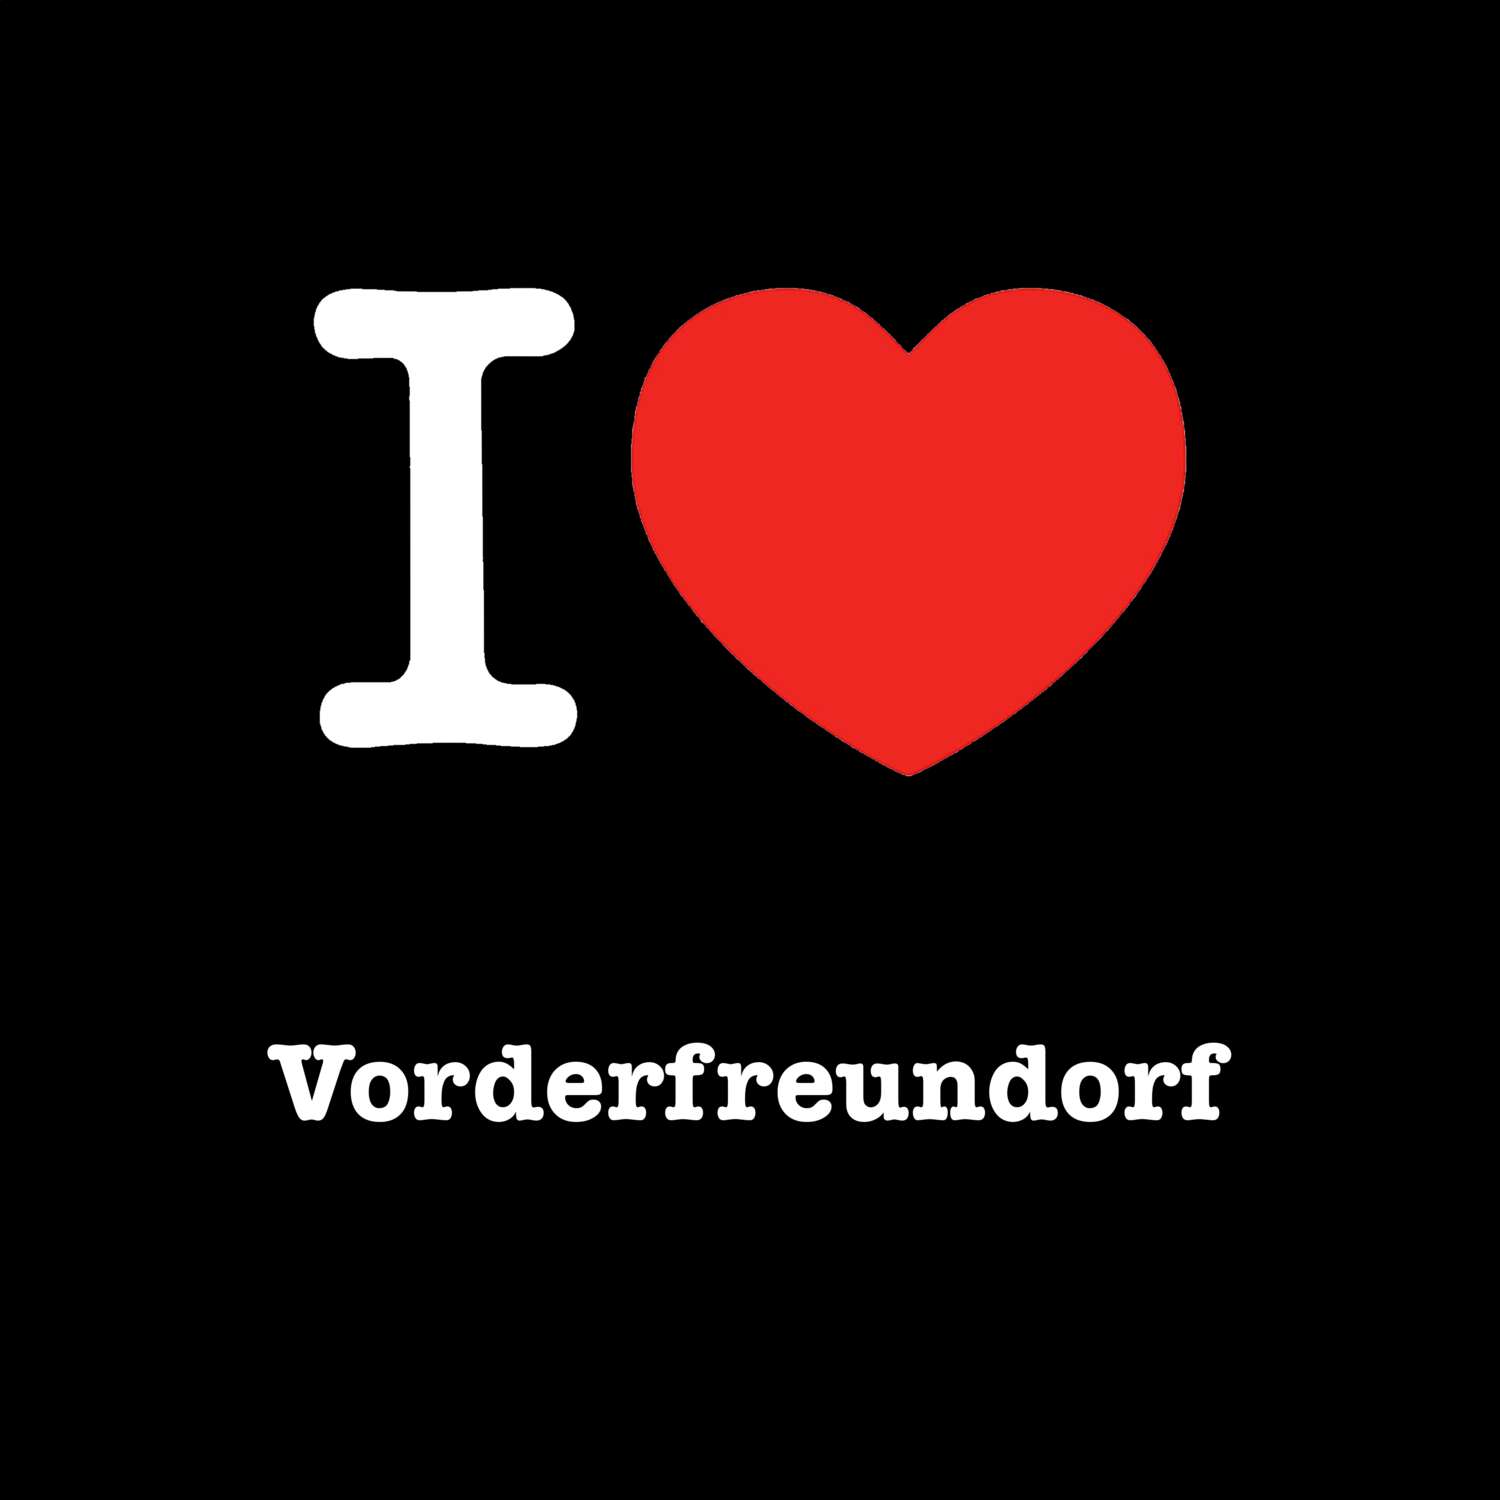 Vorderfreundorf T-Shirt »I love«